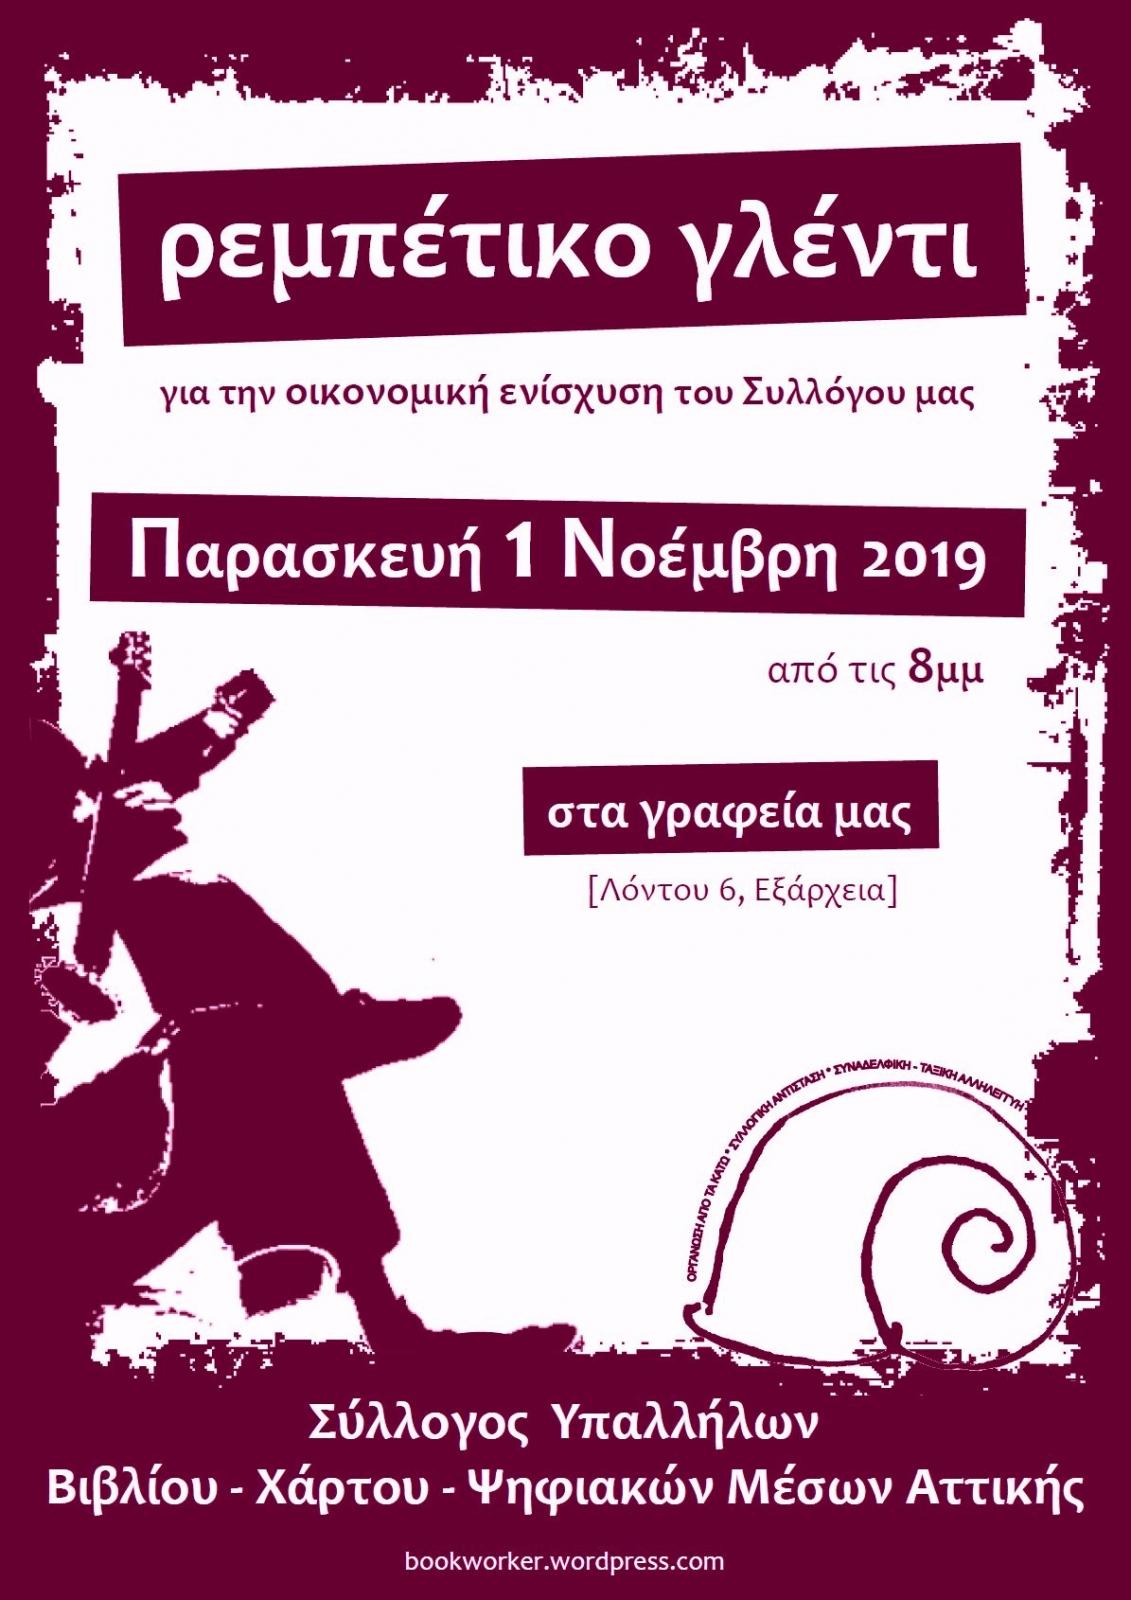 Αθήνα: Ρεμπέτικο γλέντι οικονομικής ενίσχυσης του ΣΥΒΧΨΑ